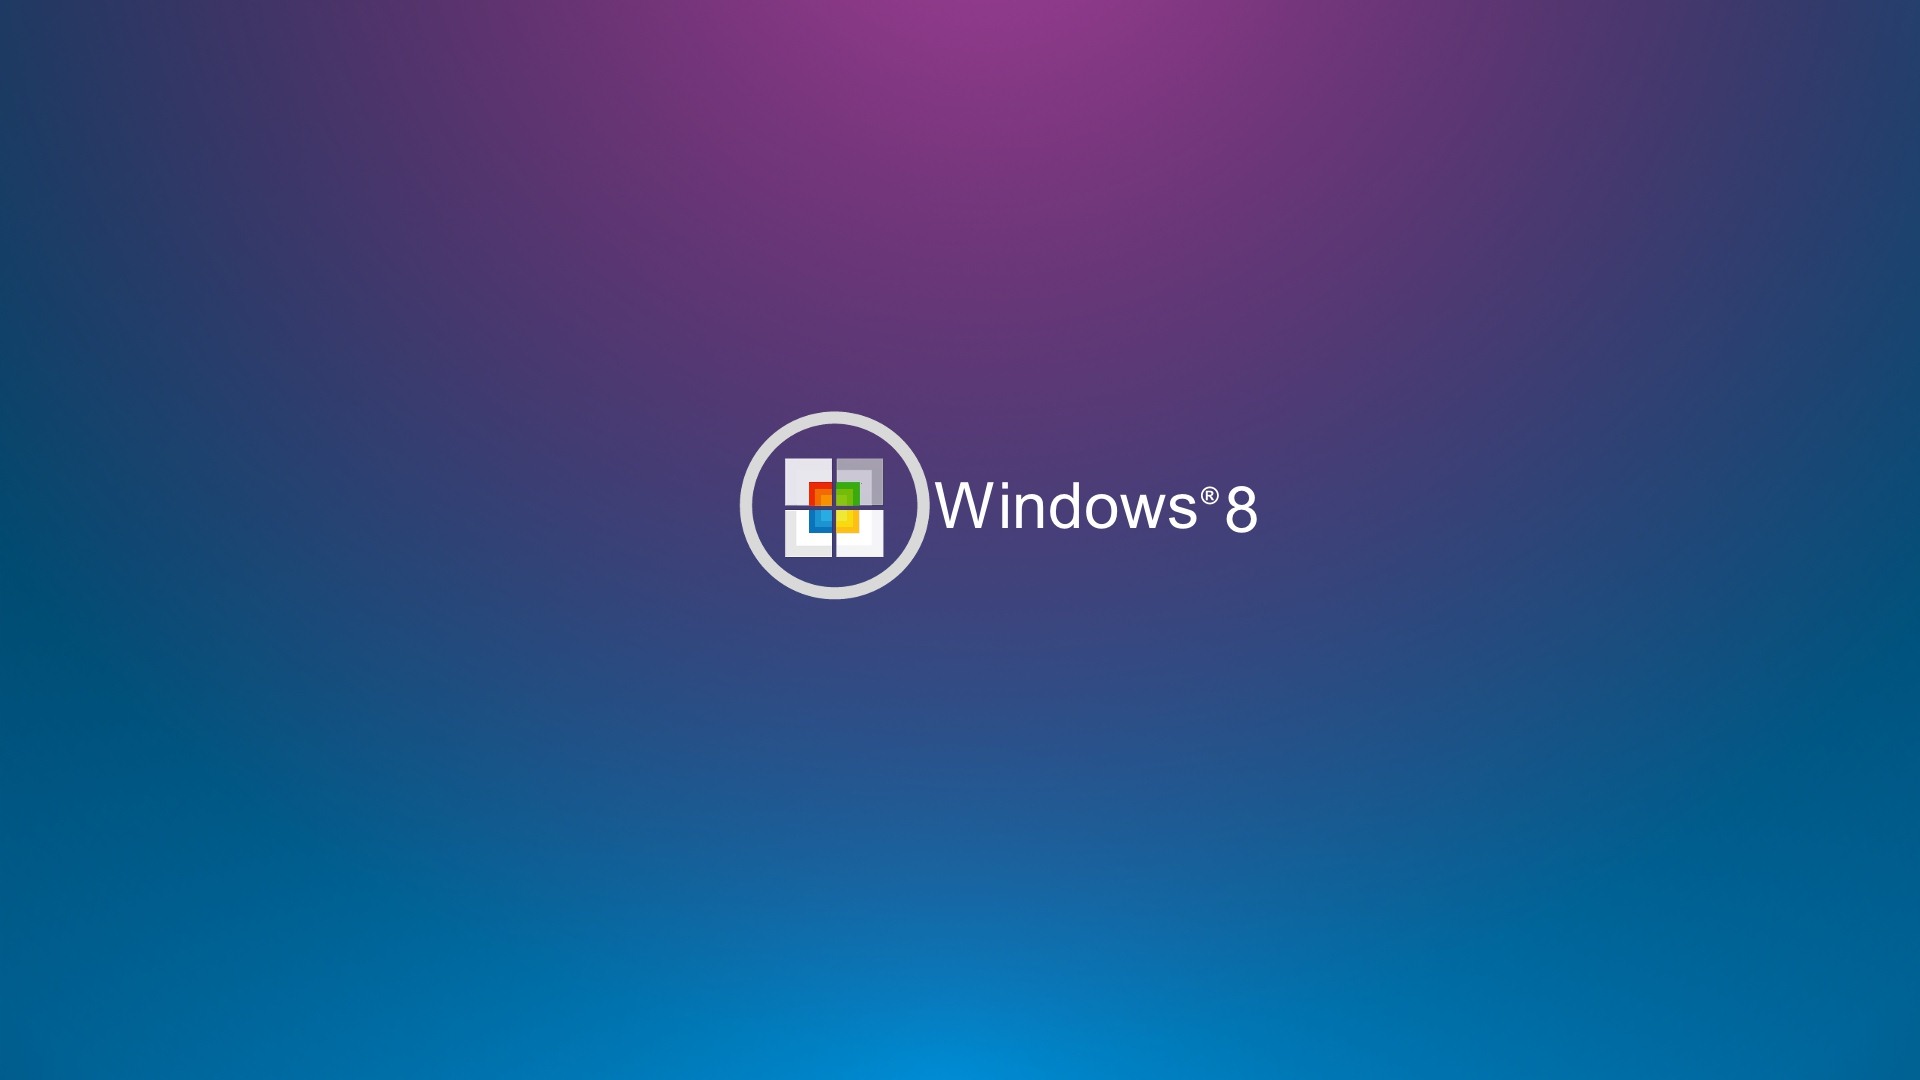 Windows 8 Theme Wallpaper (2) #20 - 1920x1080